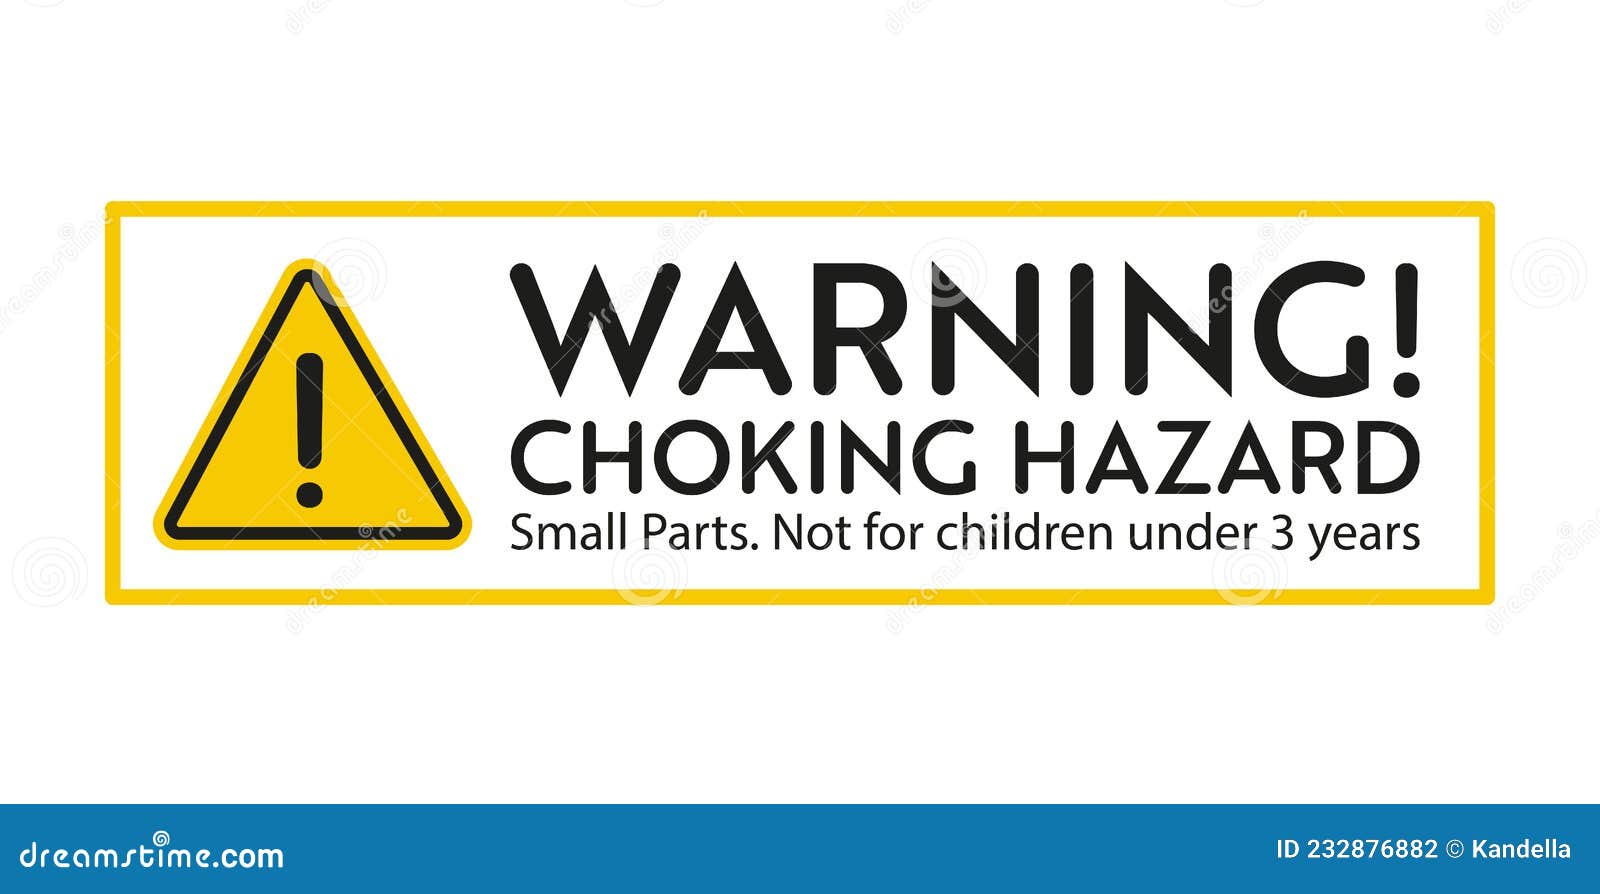 choking hazard warning sign.